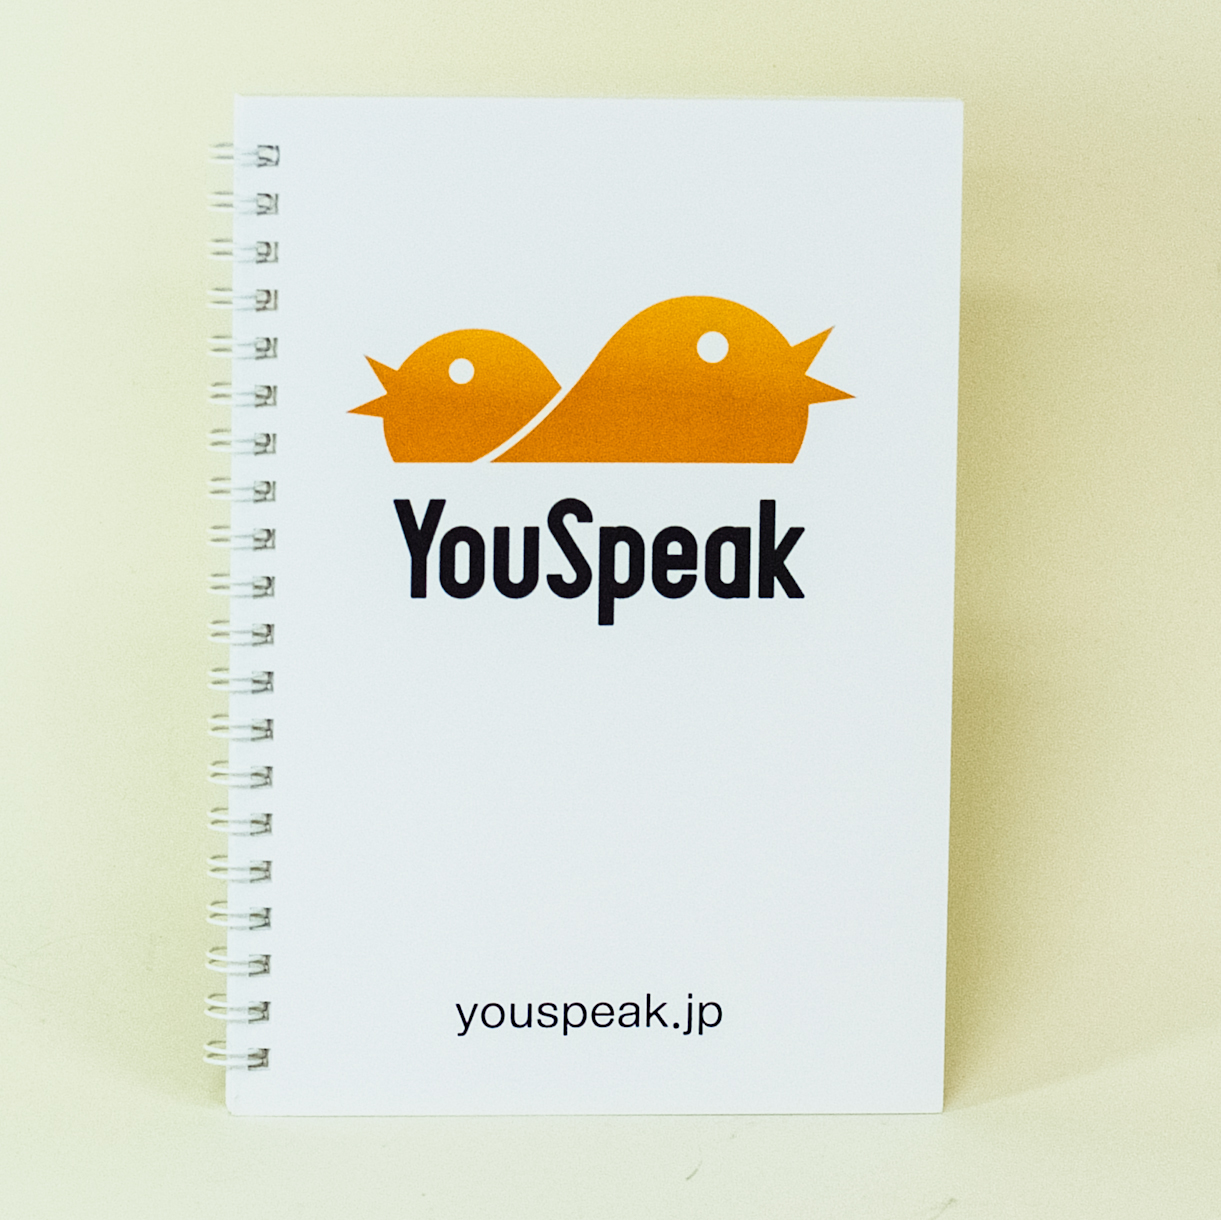 「YouSpeak 様」製作のオリジナルノート